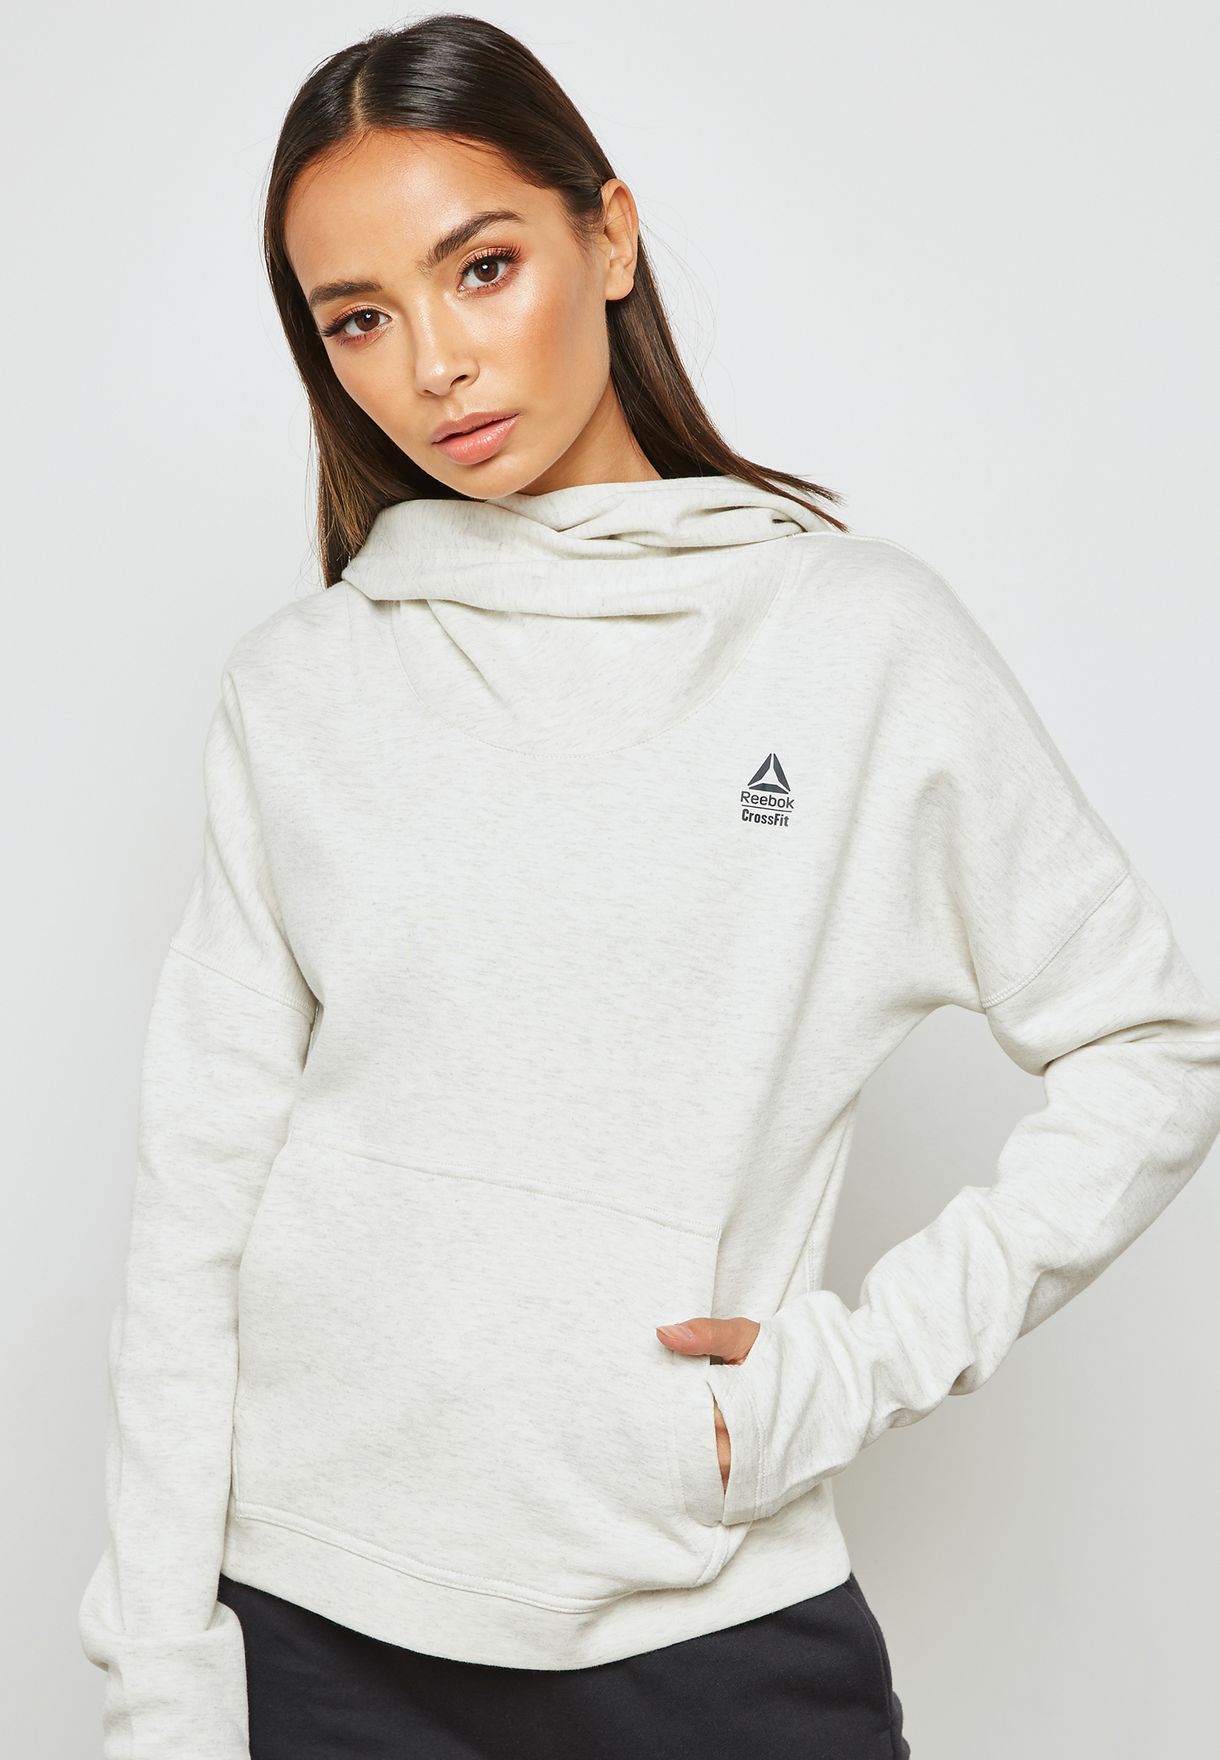 reebok crossfit hoodie womens 2015